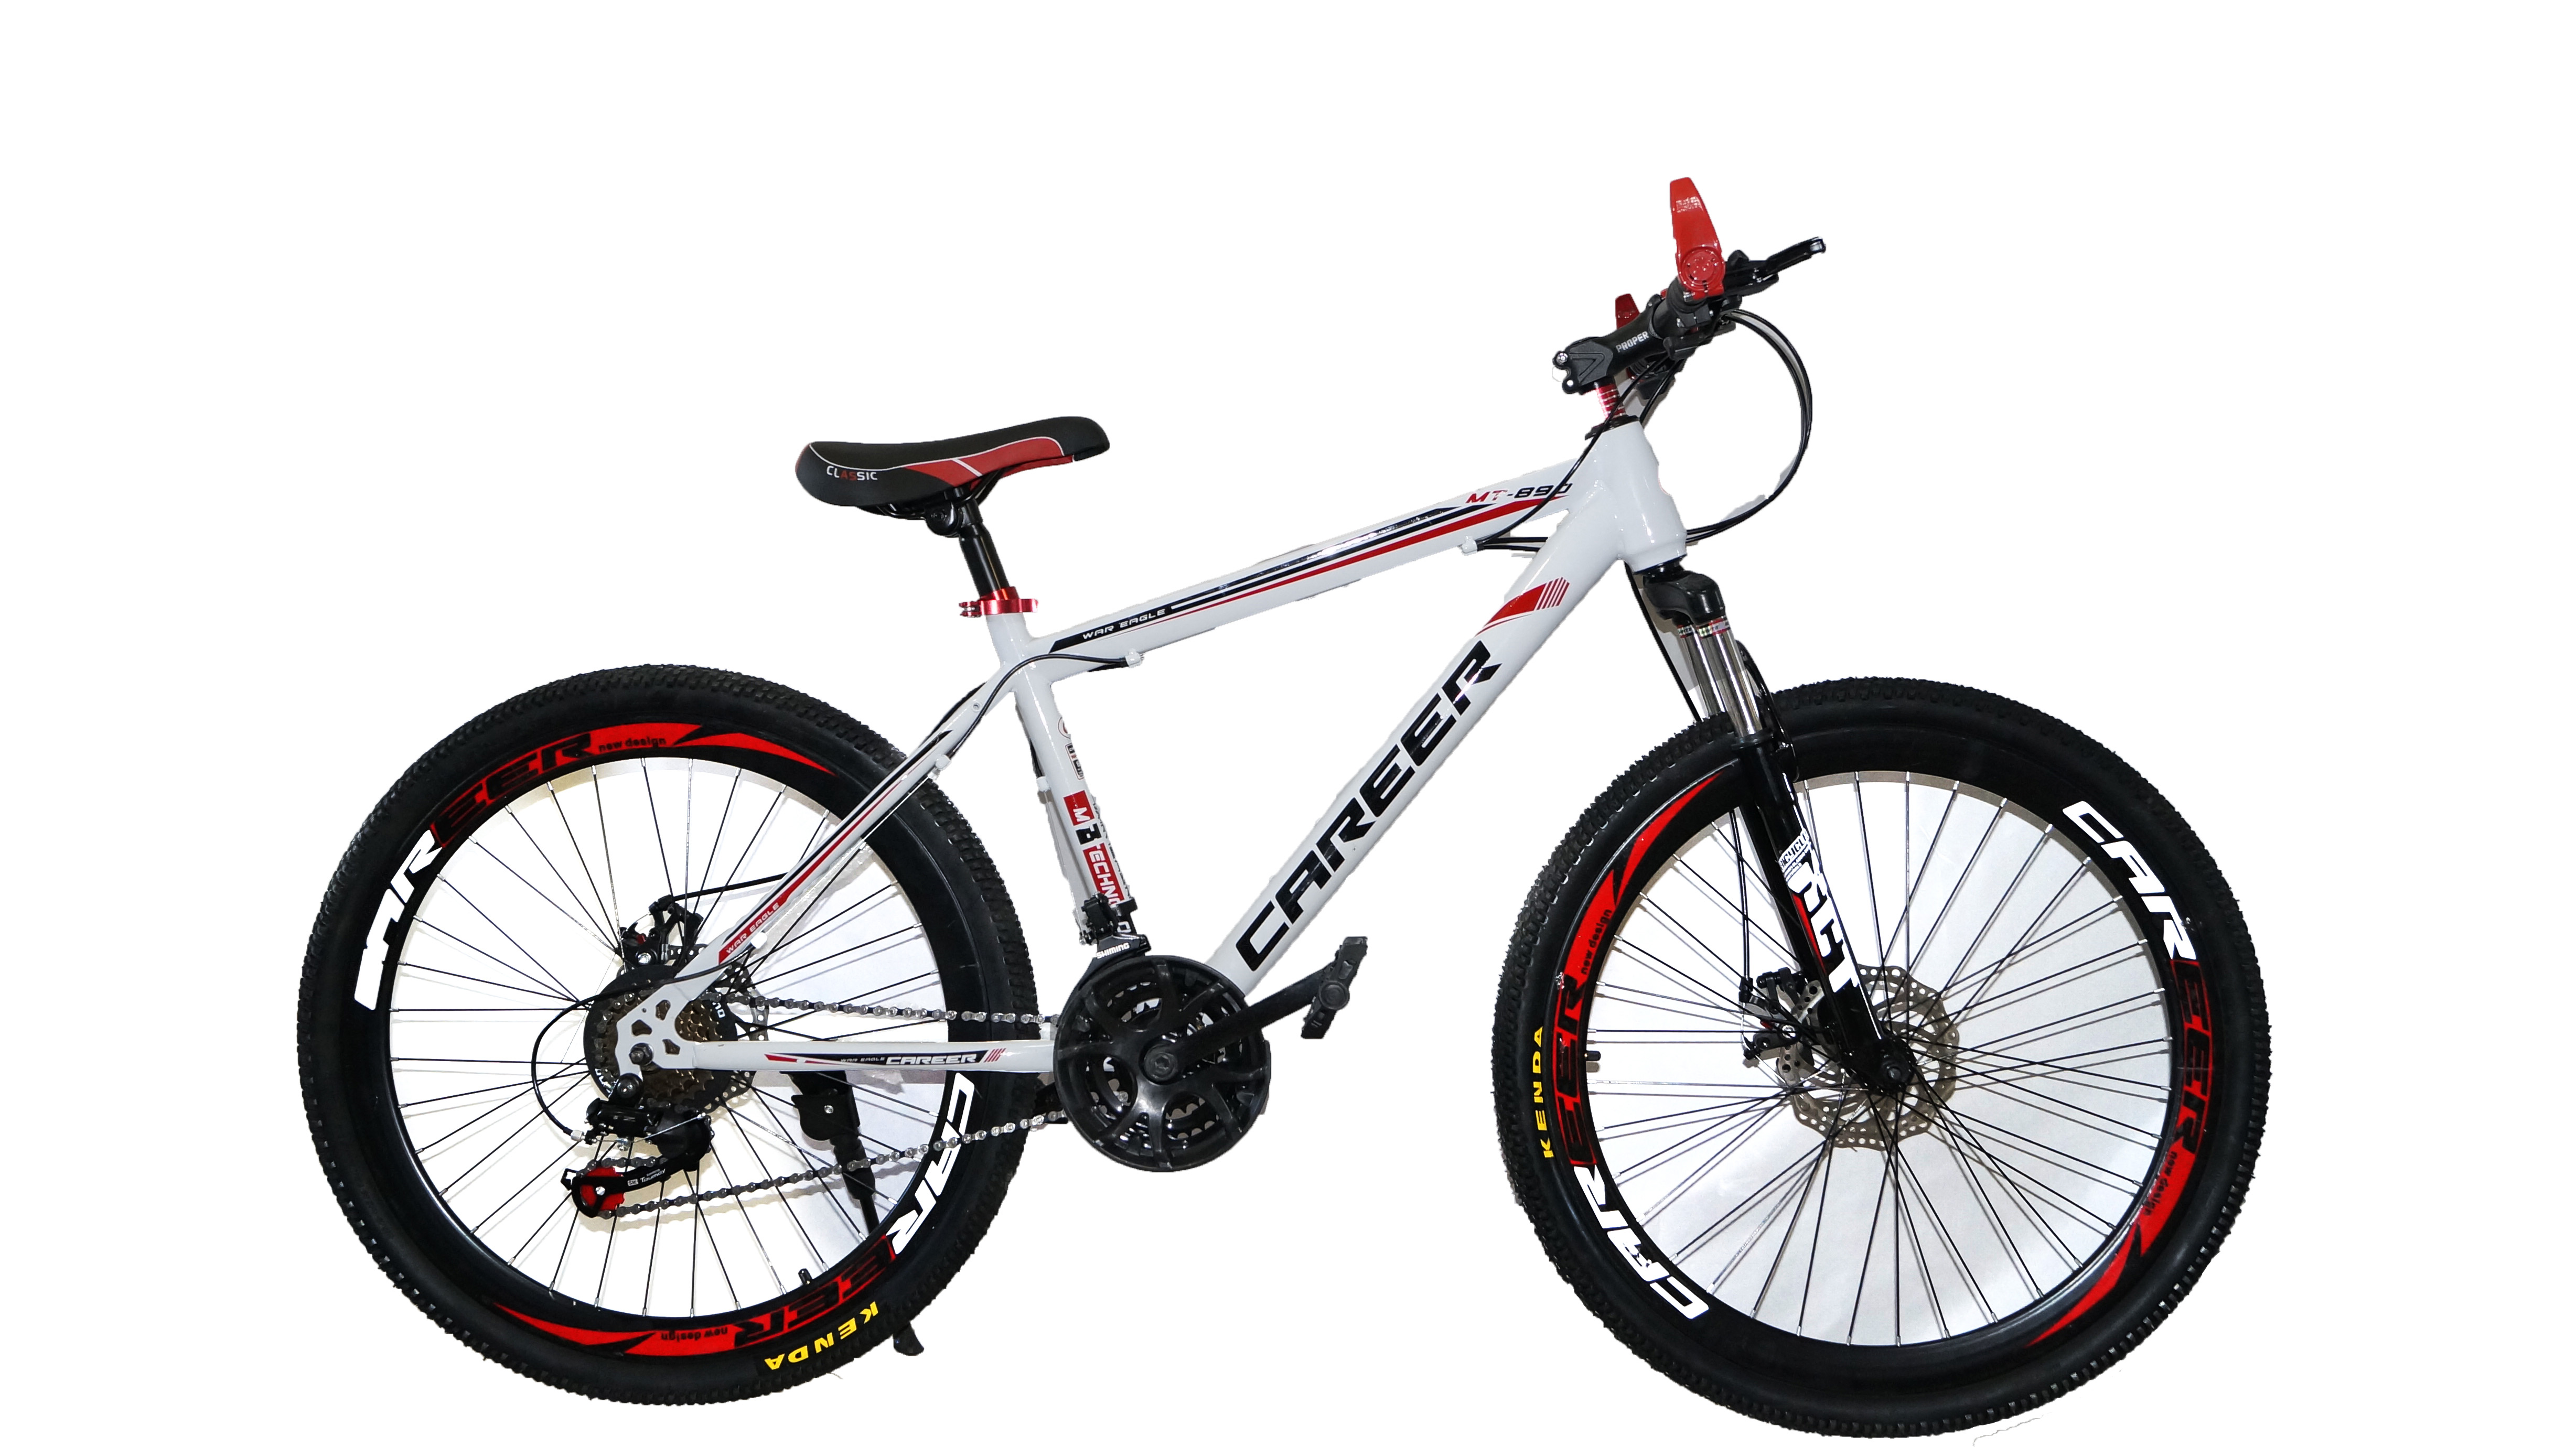 Купить велосипед во владивостоке. Велосипед Energy e01, 26 дюймов, 21 скорость, (черно-красный). Велосипед Dream c680. Велосипед career c680 характеристики. Велосипед Drive Dr-797.